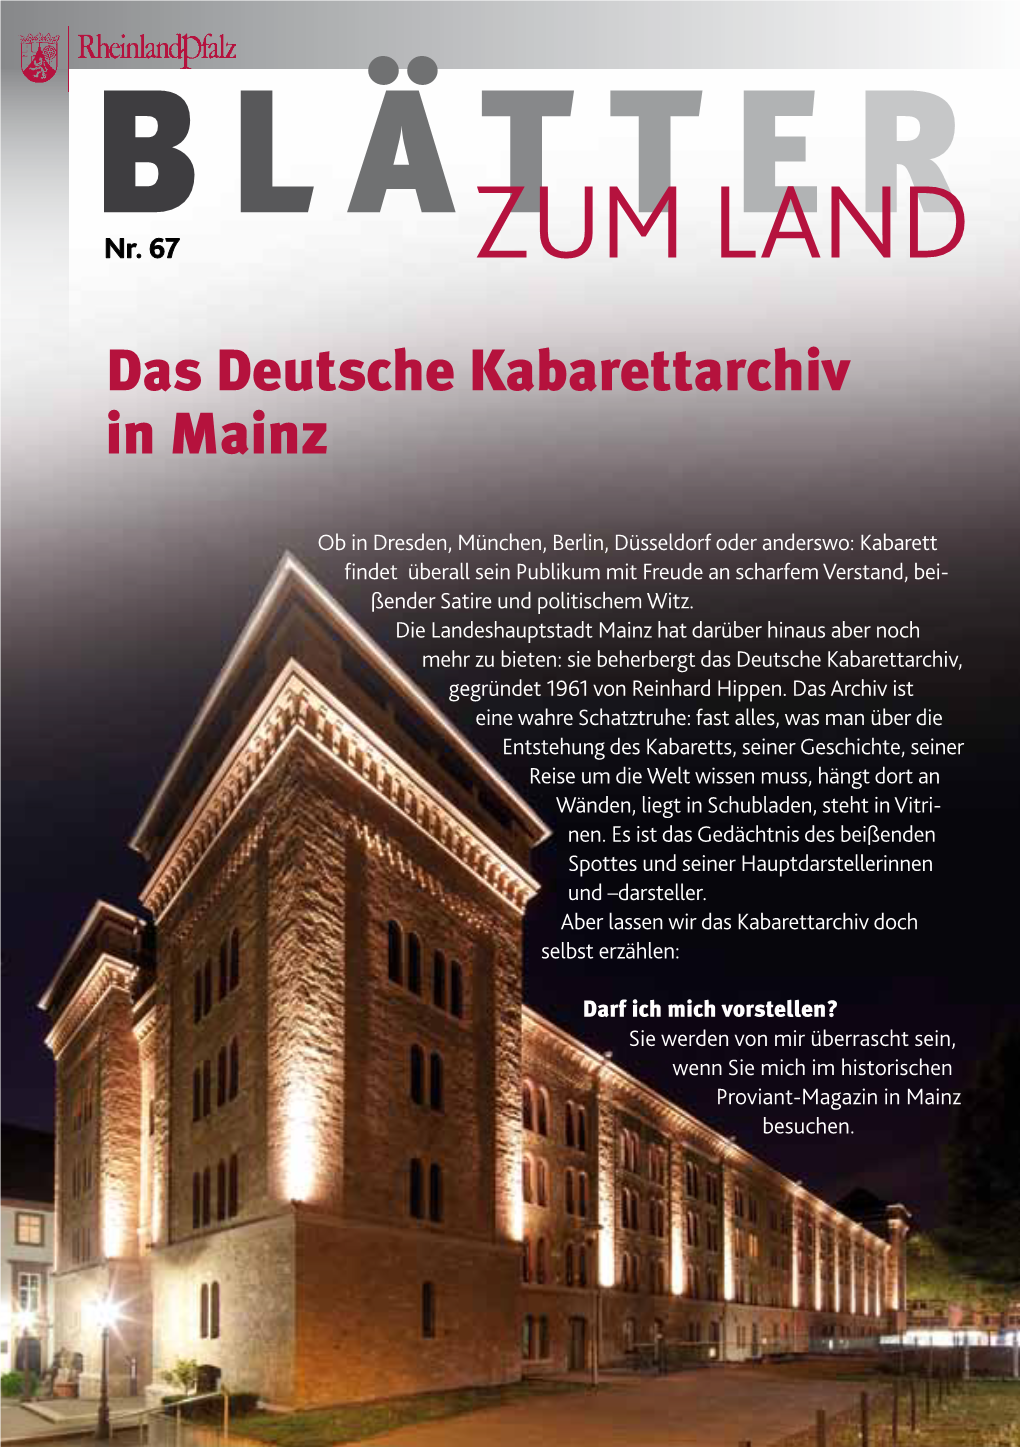 Das Deutsche Kabarettarchiv in Mainz